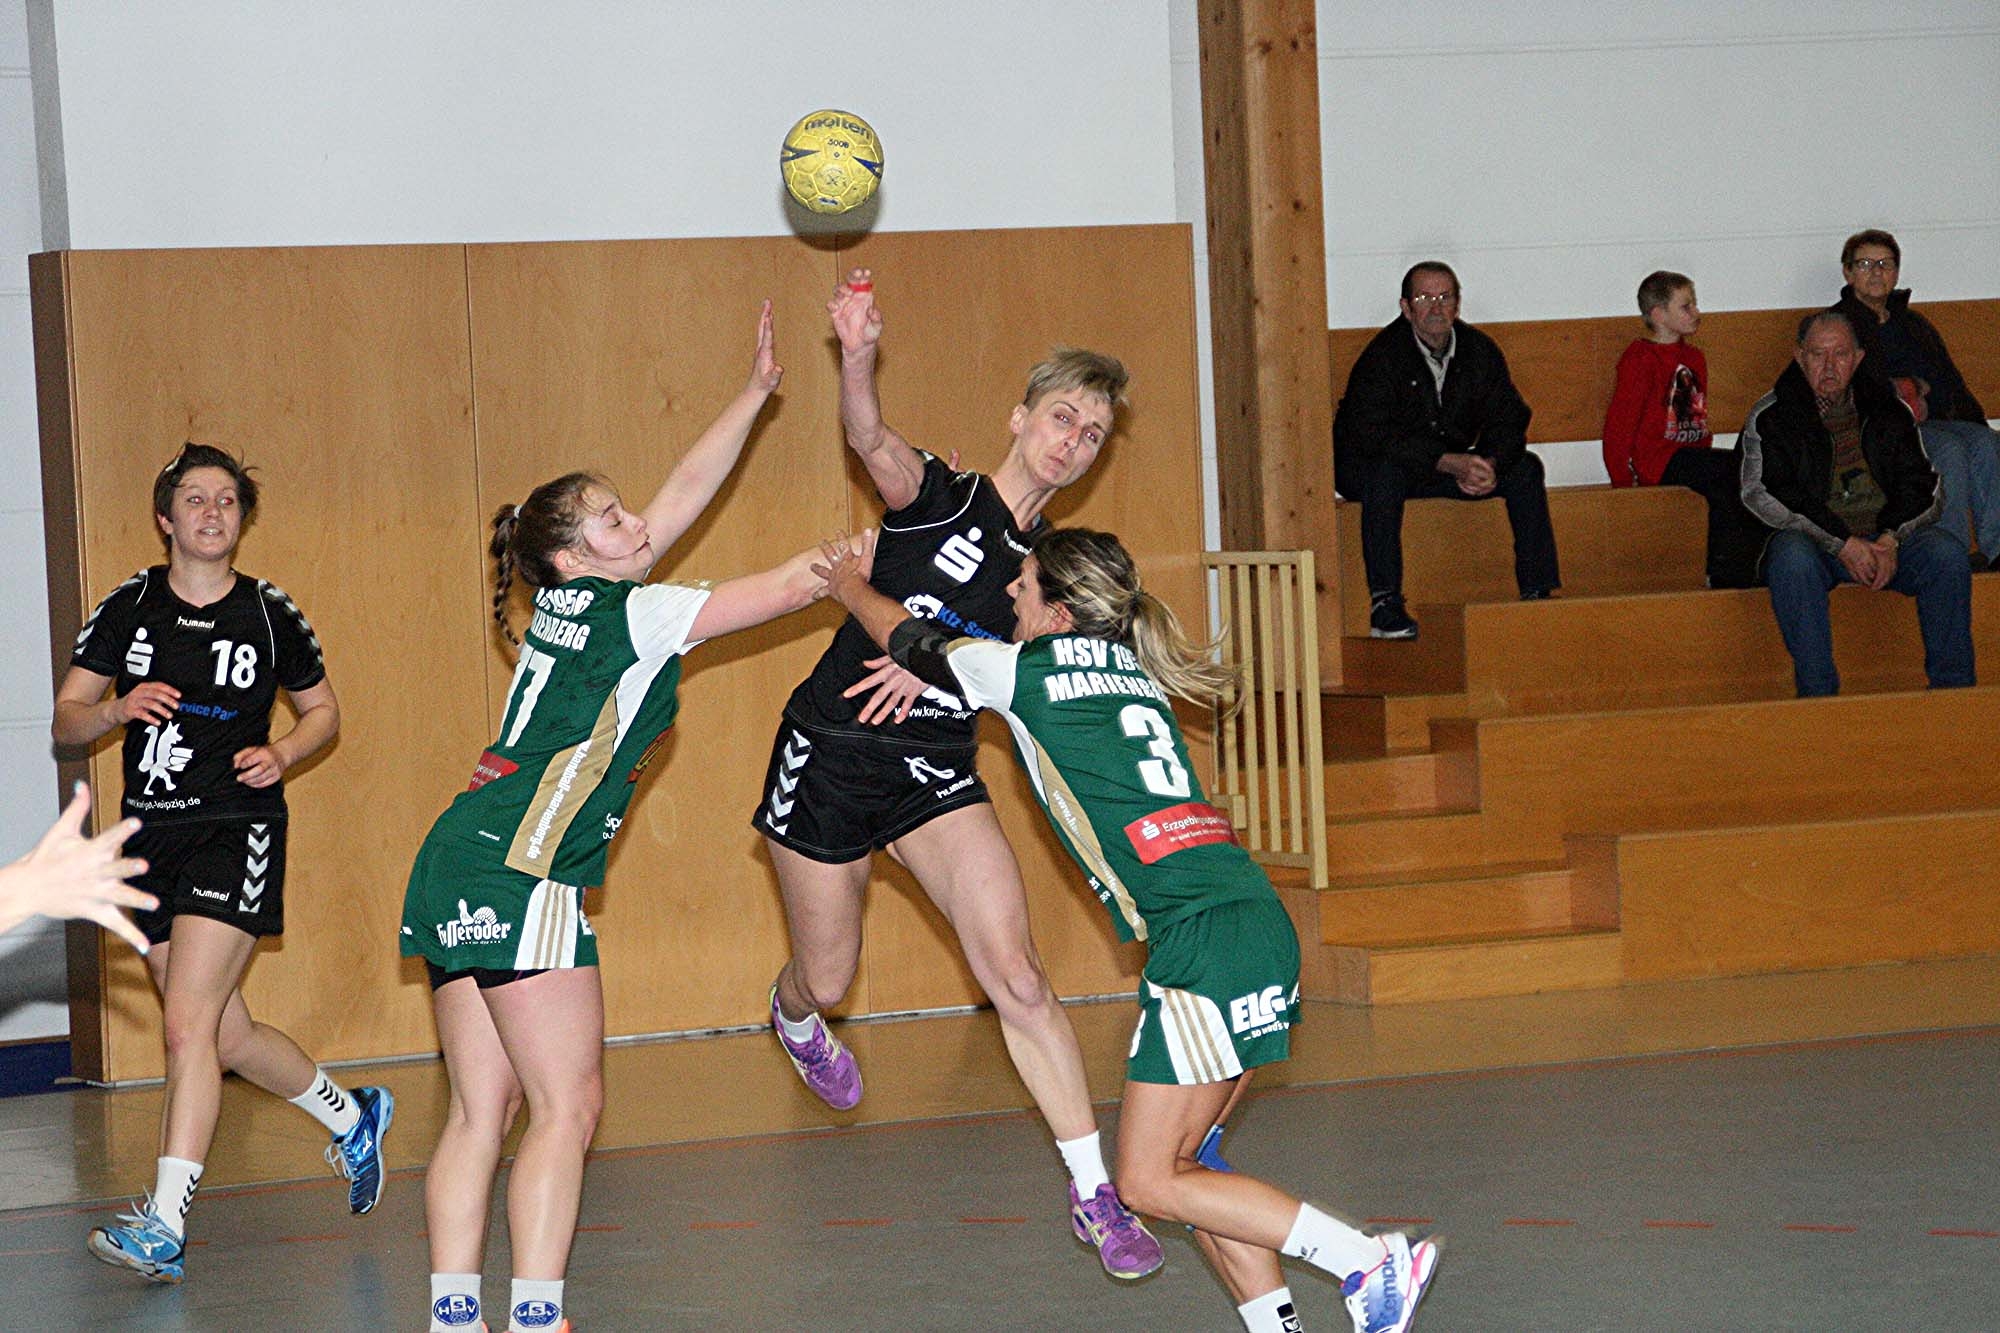 Handball Naunhof